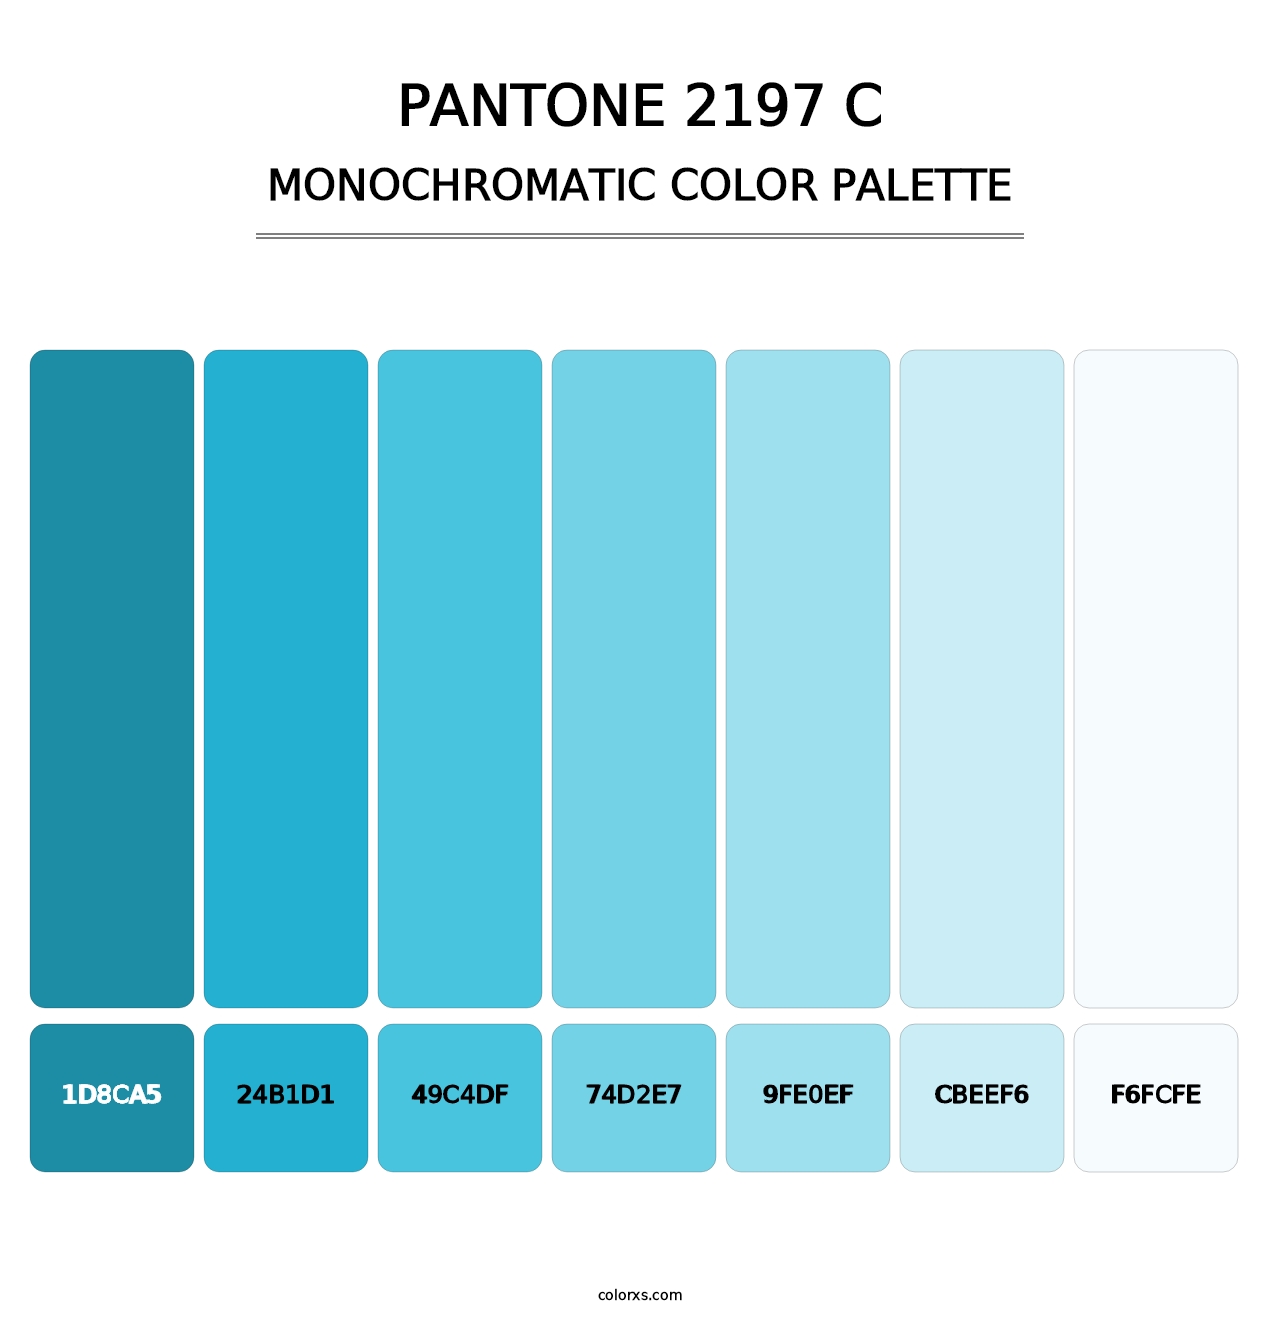 PANTONE 2197 C - Monochromatic Color Palette